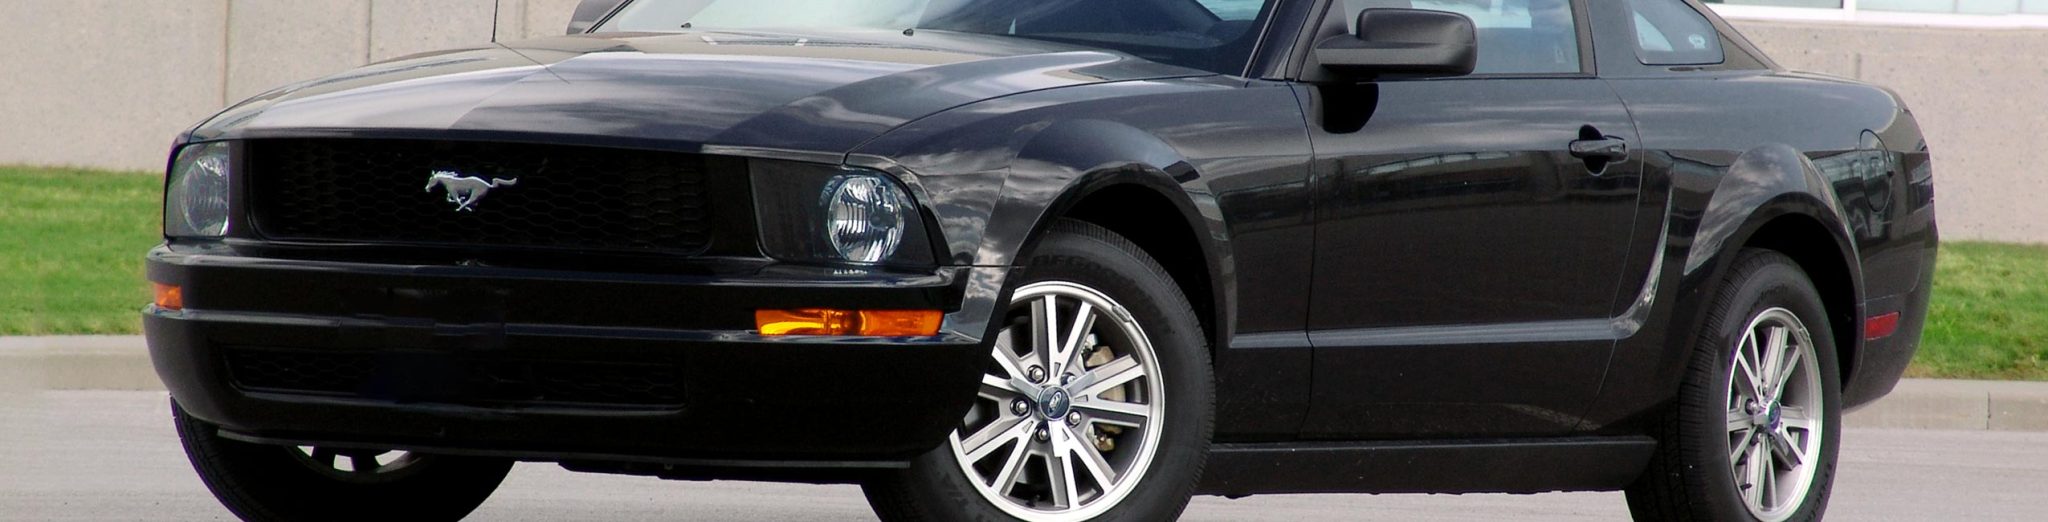 2005 - 10 Mustang V6 (4.0)